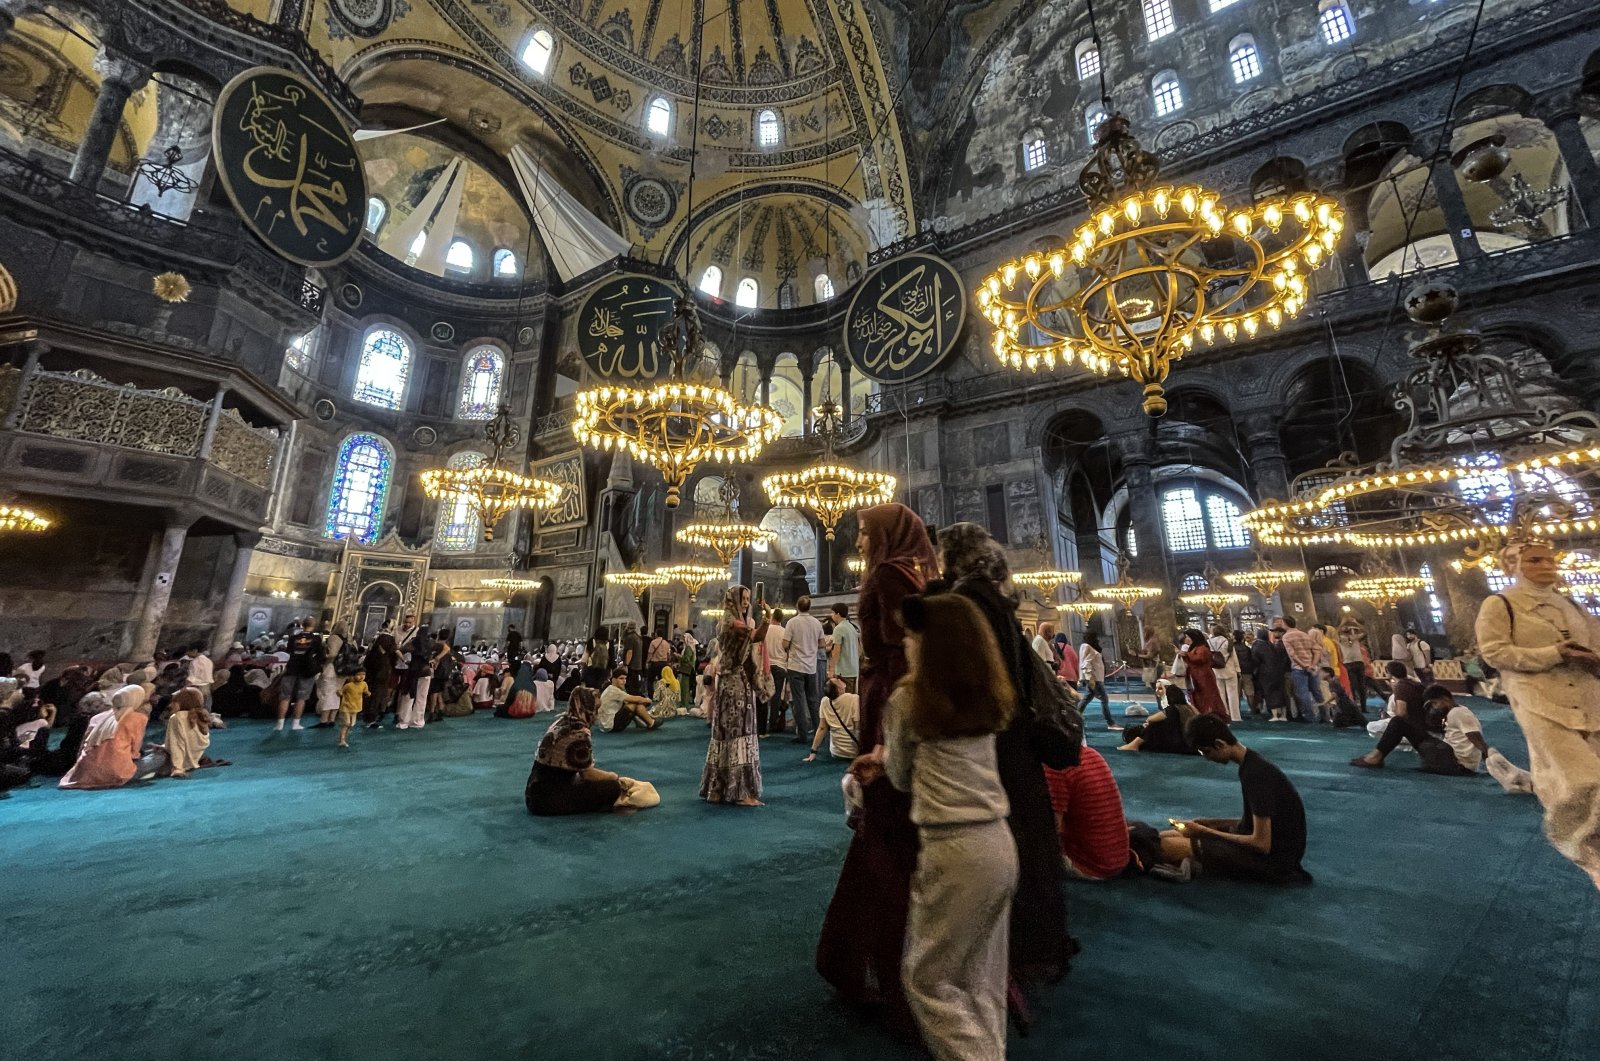 Hagia Sophia interior
